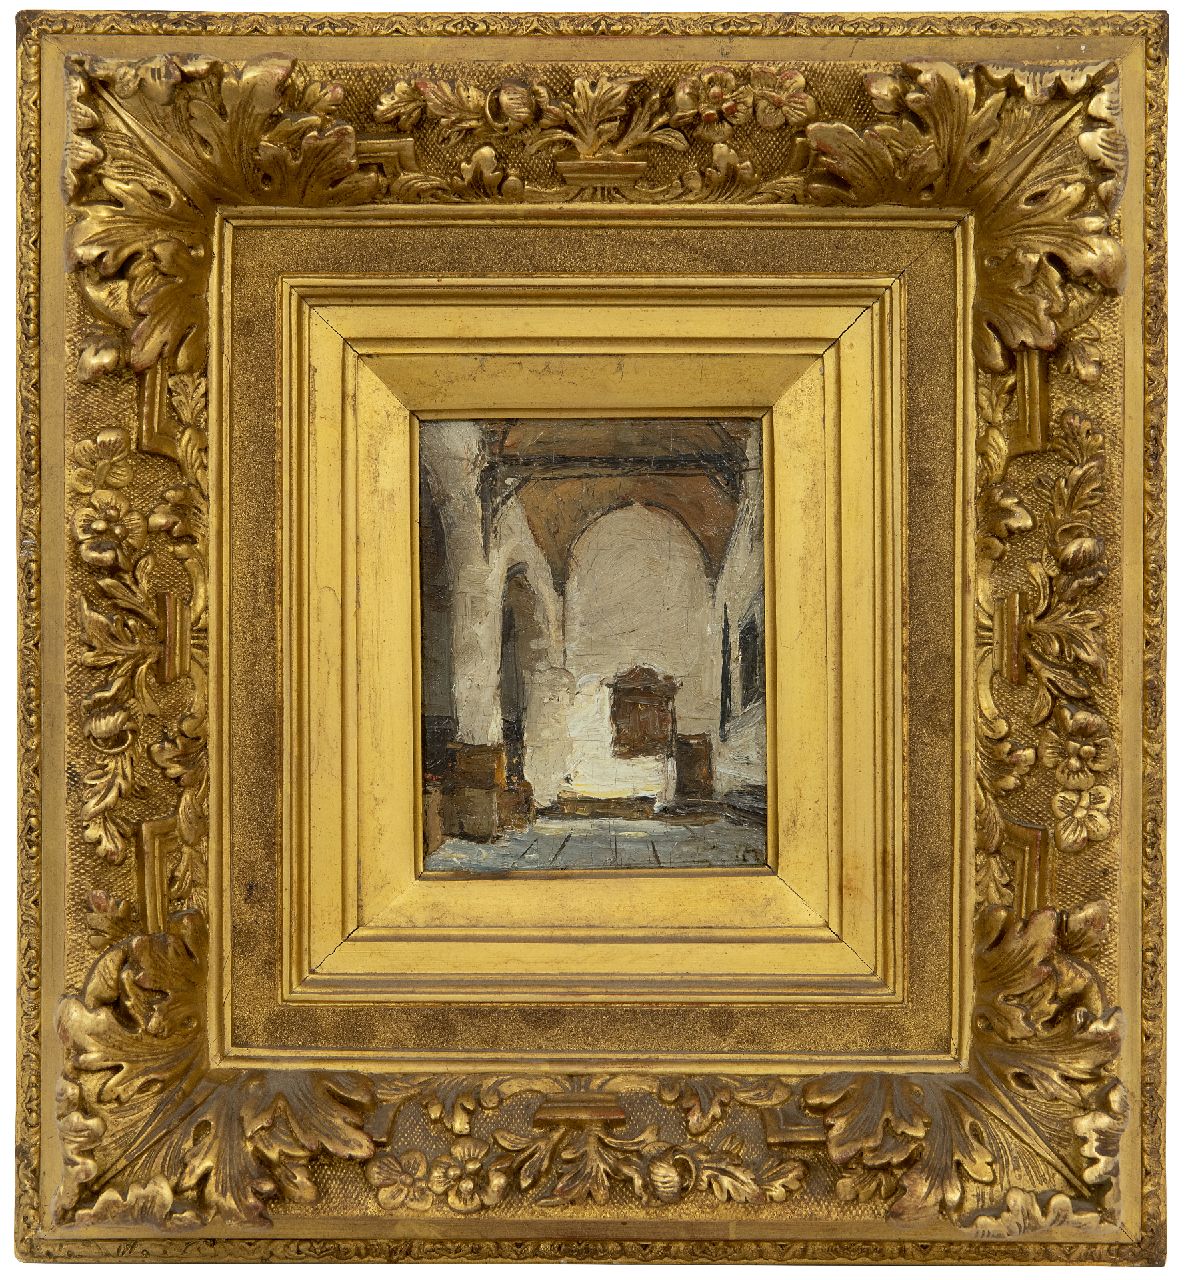 Bosboom J.  | Johannes Bosboom | Schilderijen te koop aangeboden | Kerkinterieur, olieverf op paneel 12,0 x 9,1 cm, gesigneerd rechtsonder met initialen